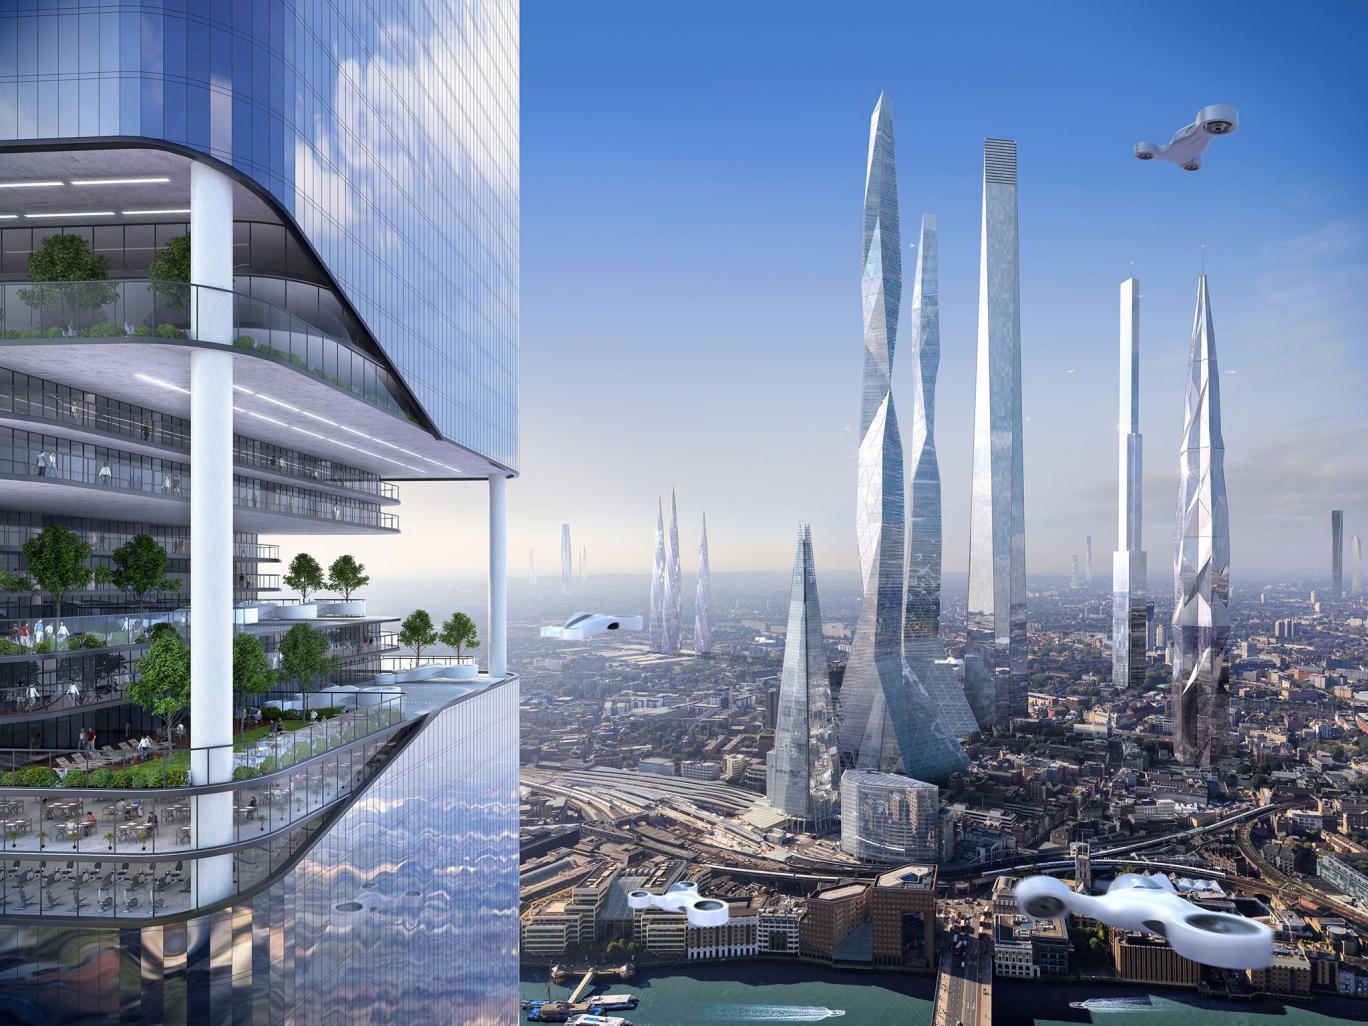 Hãy cùng chúng tôi chiêm ngưỡng những kiến trúc tuyệt đẹp và đầy triển vọng của thành phố mơ ước trong tương lai sắp tới. Cảm nhận không gian mới hoàn toàn và cùng suy nghĩ về những 100 năm sắp tới nhé!